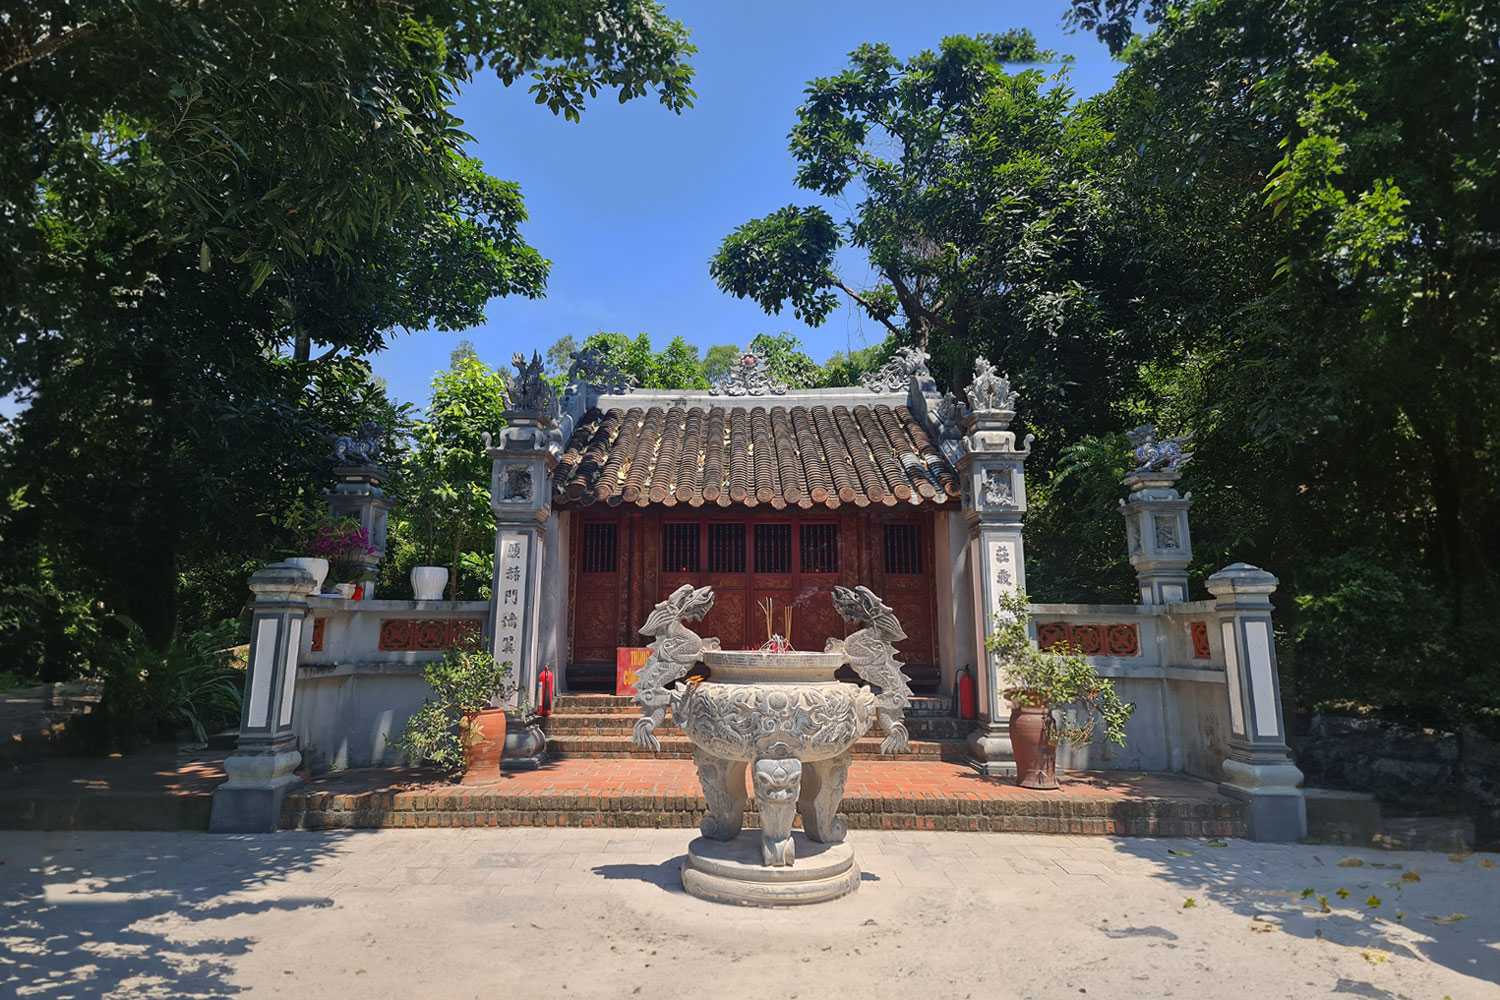 Đền thờ Công chúa Liễu Hạnh là một di tích lịch sử - văn hoá quan trọng của tỉnh Quảng Bình.